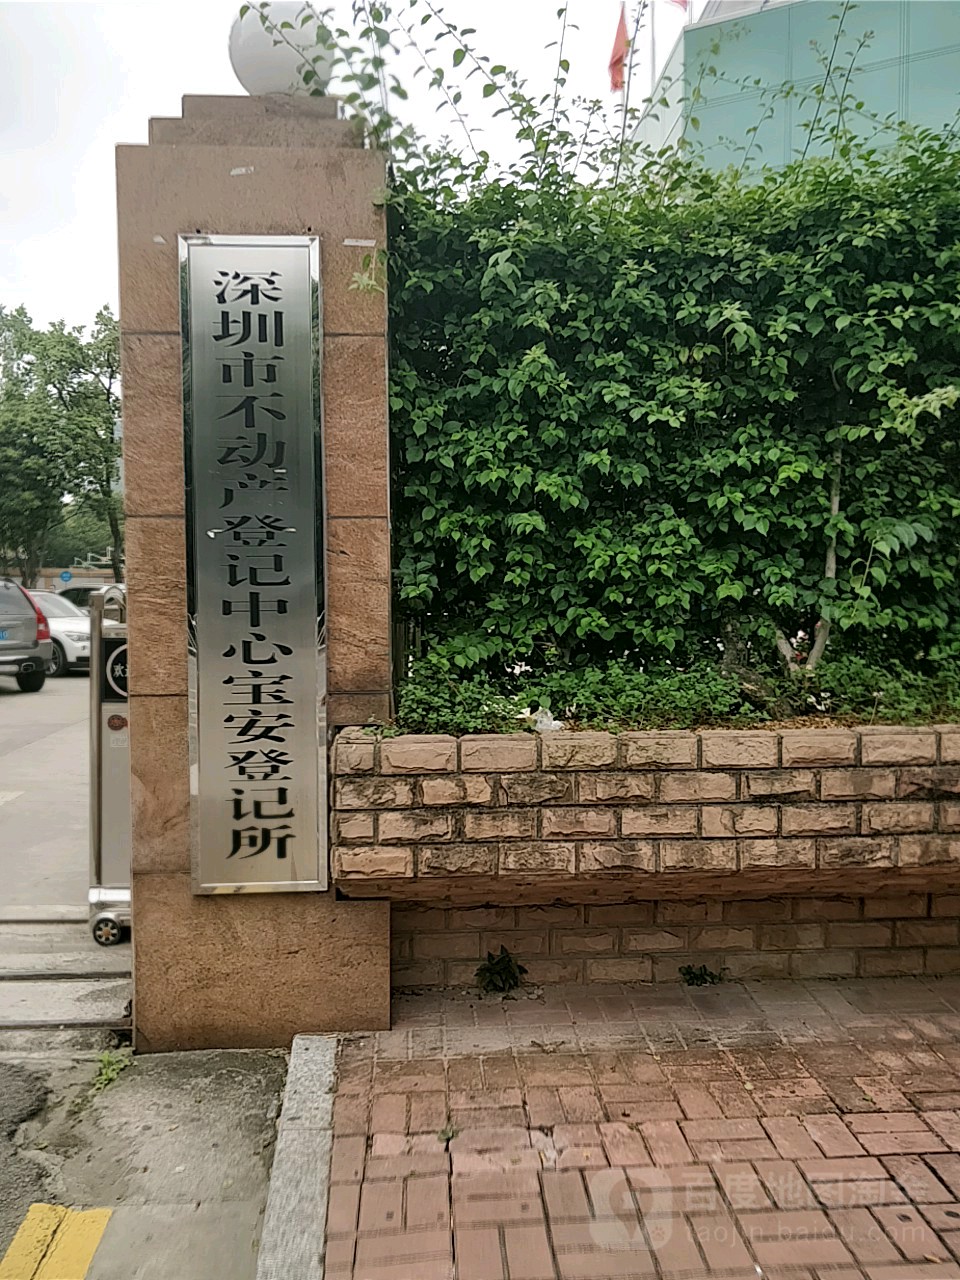 深圳市不动产登记中心